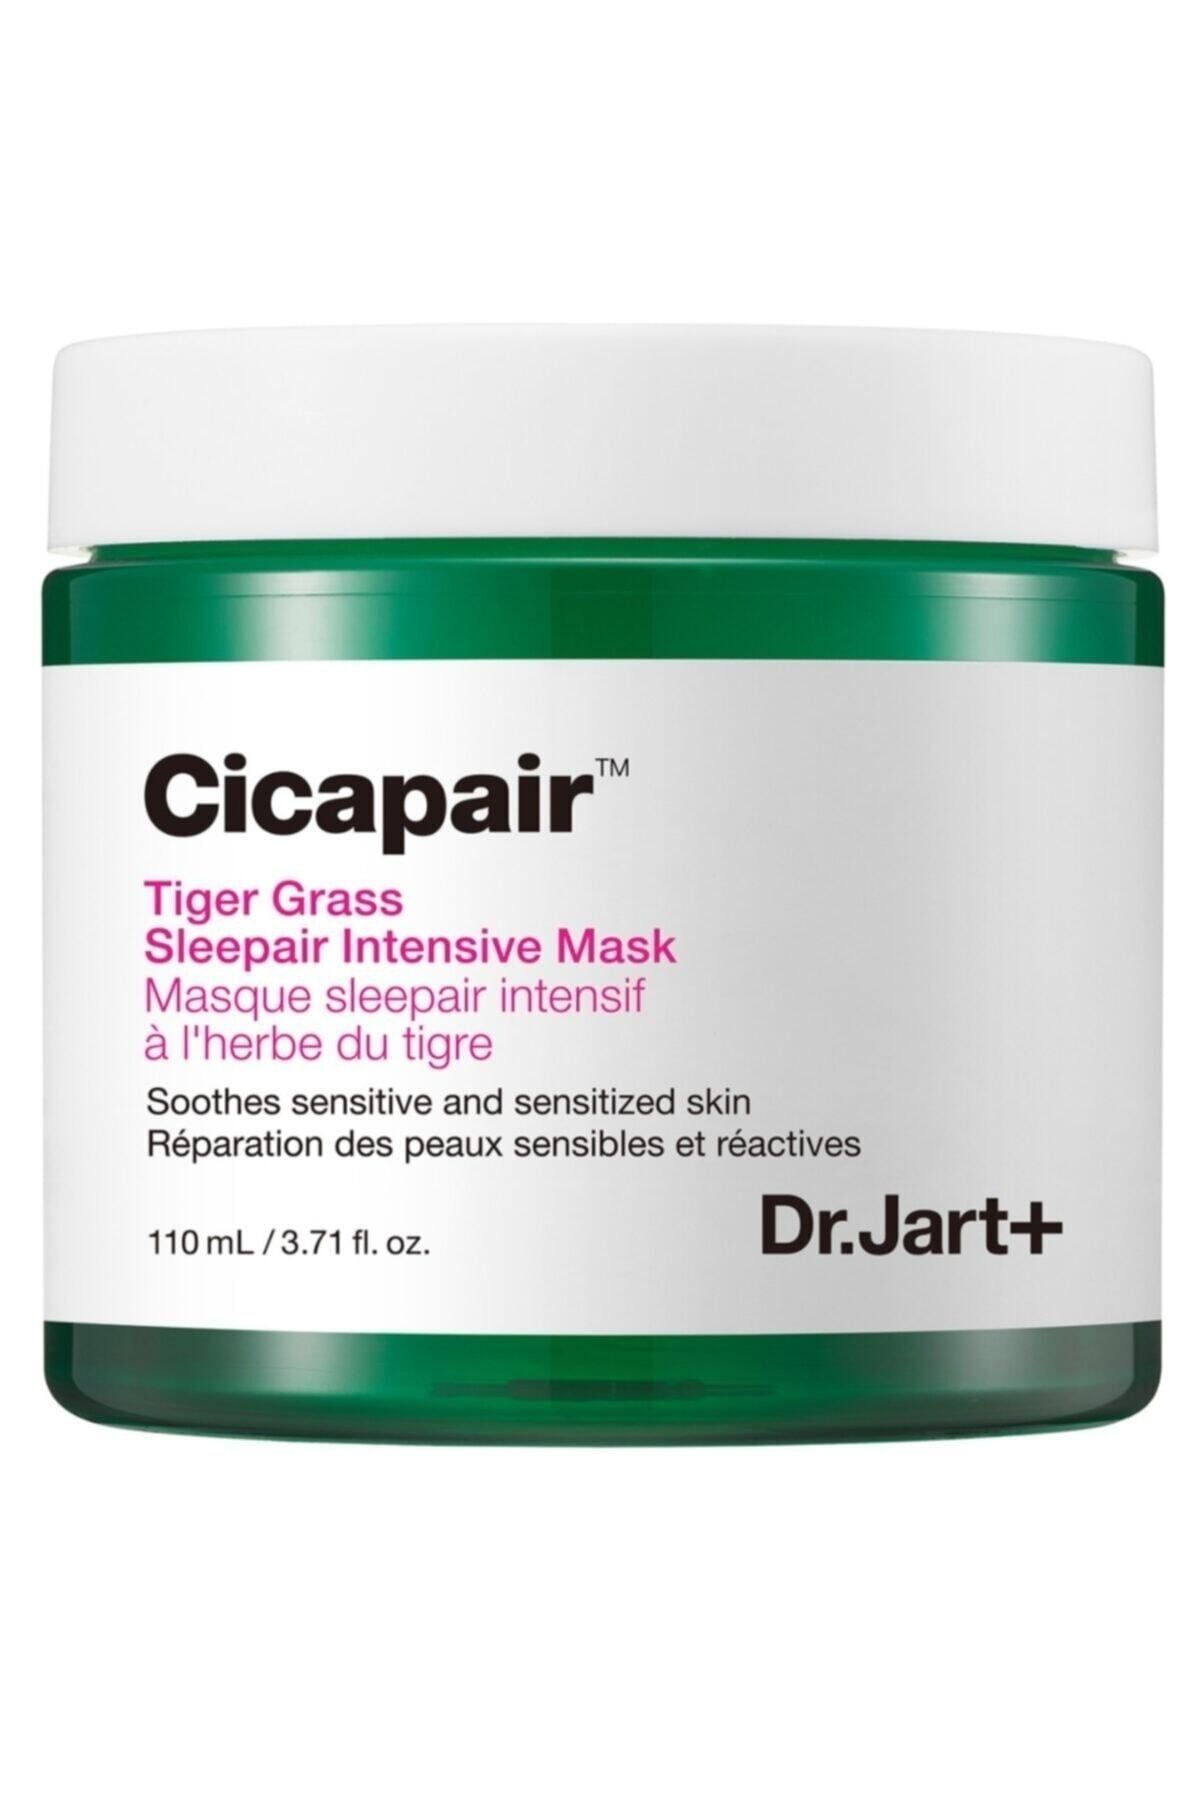 Dr. Jart+ Dr.jart+ Cicapair Tiger Grass Sleepair Intensive Mask Onarıcı Maske 110 Ml Shopping E.s